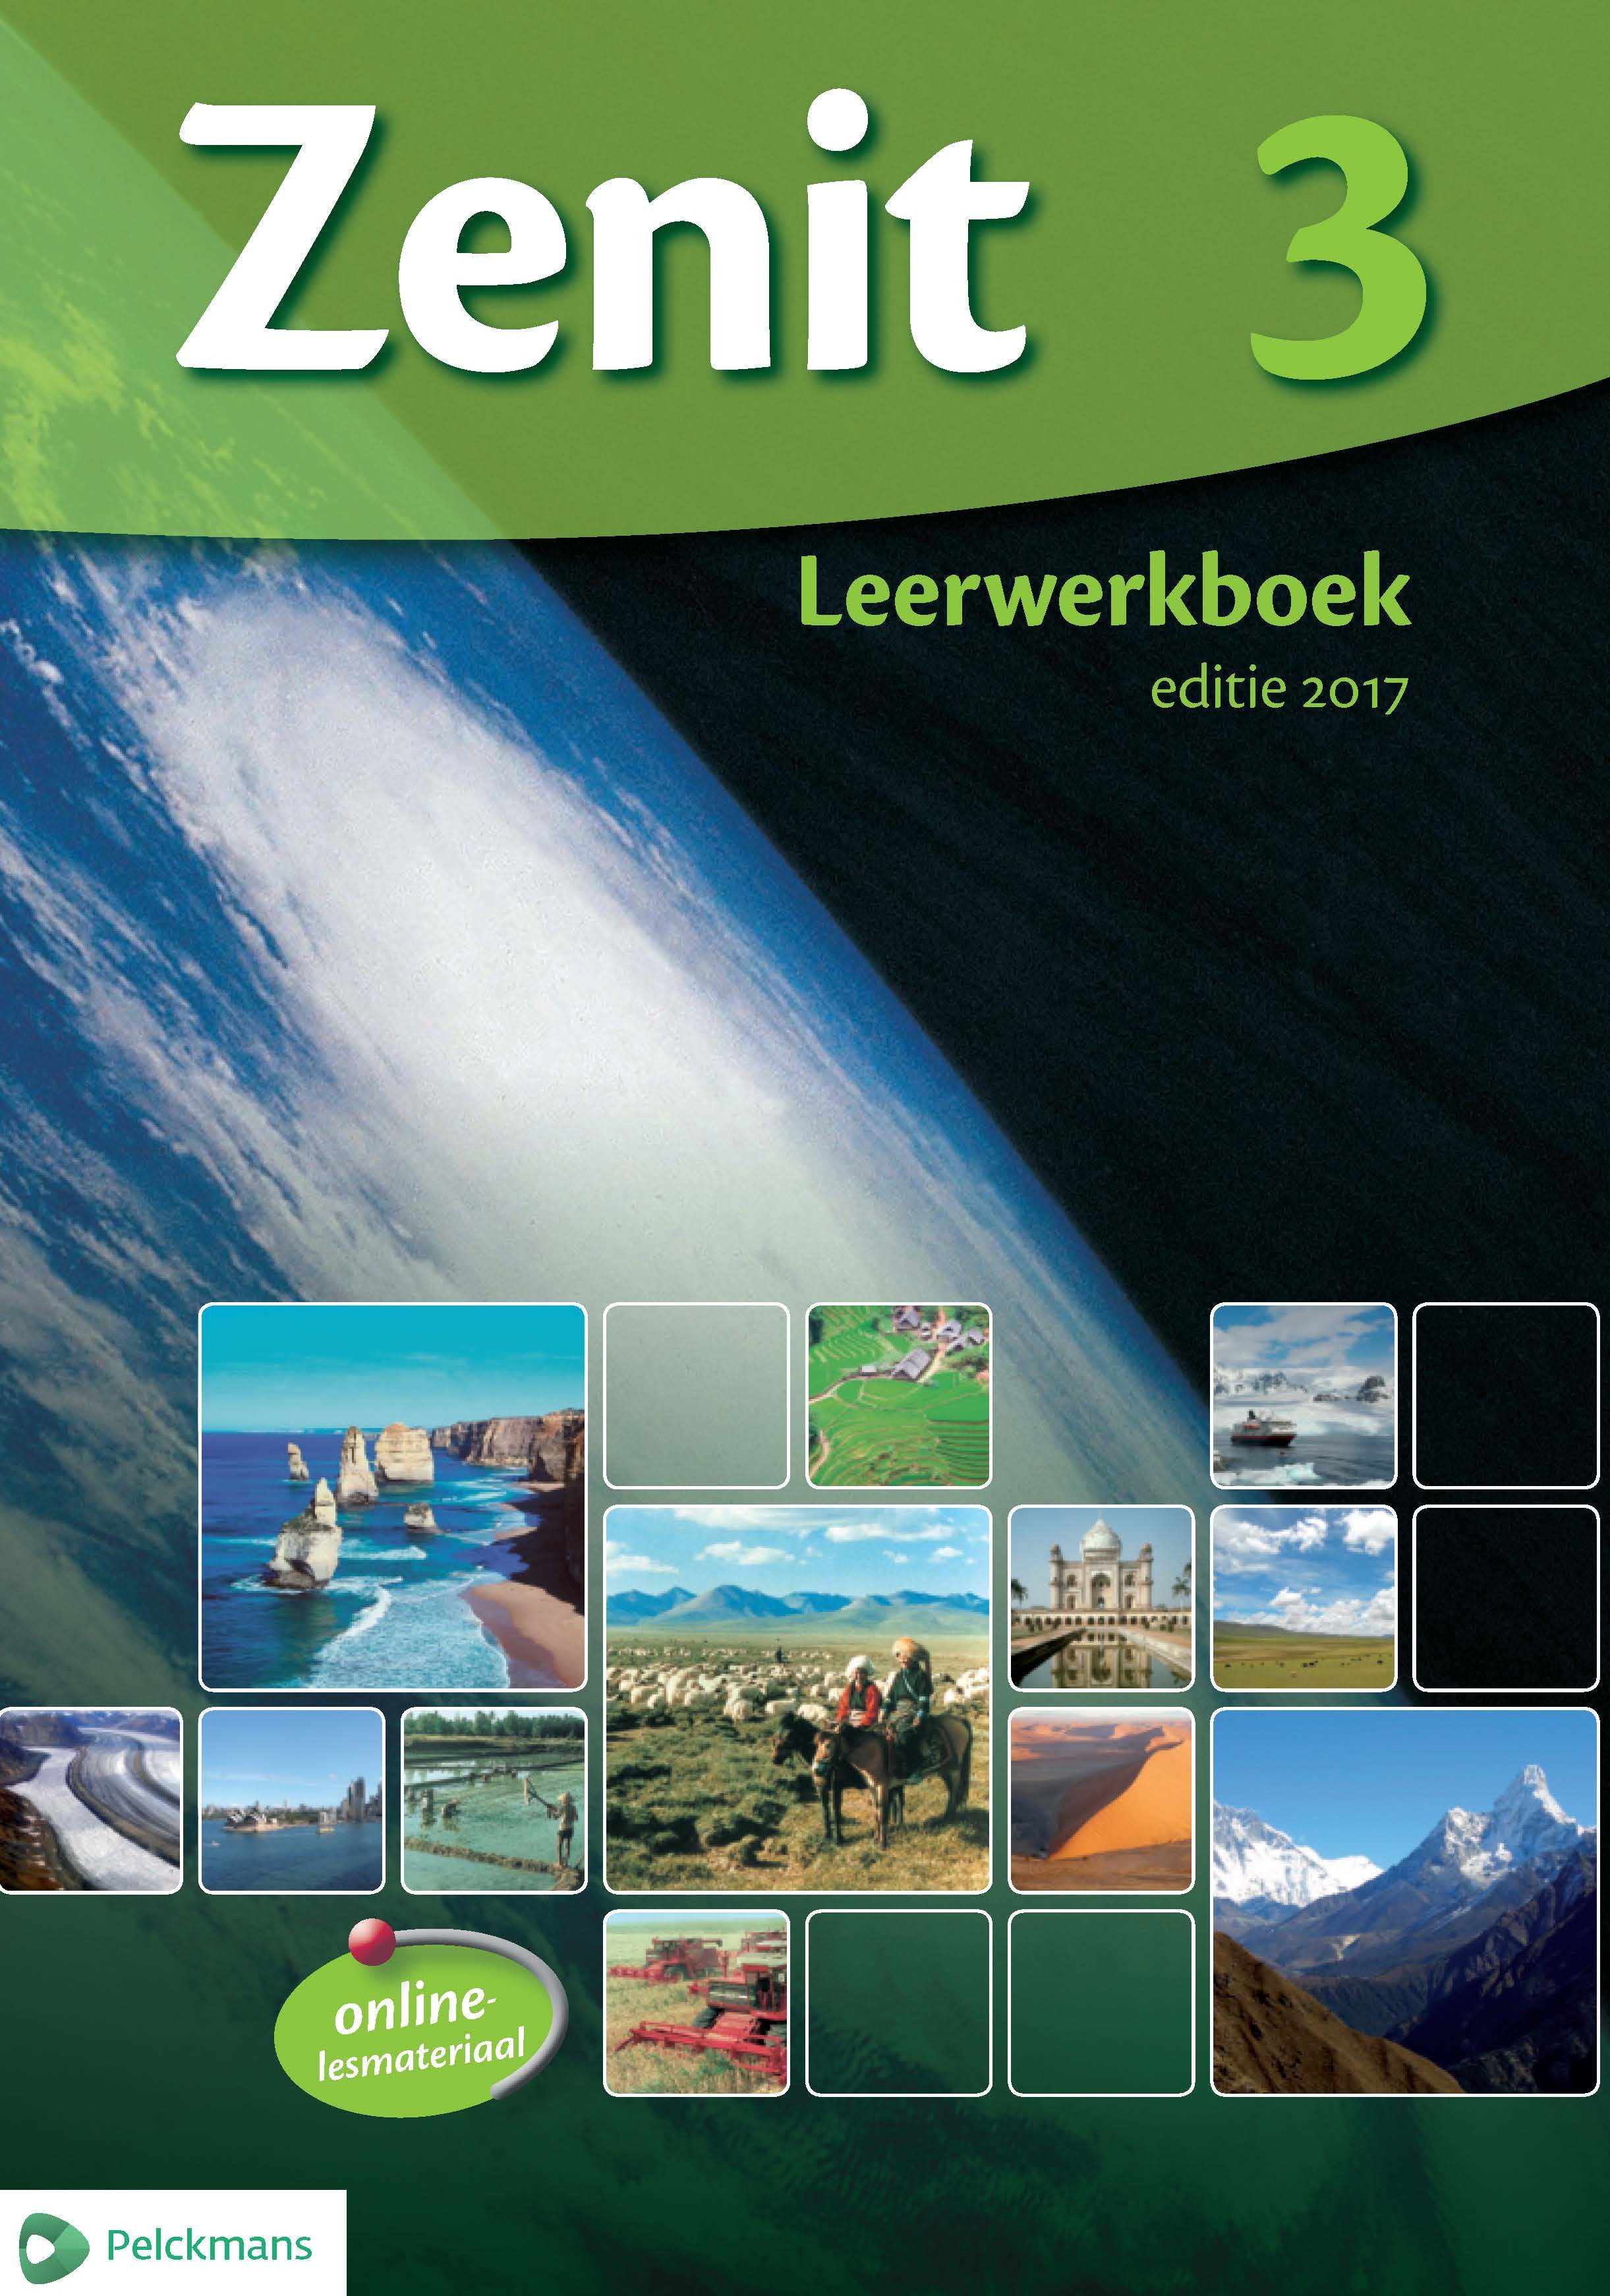 Zenit 3 Leerwerkboek aso editie 2017